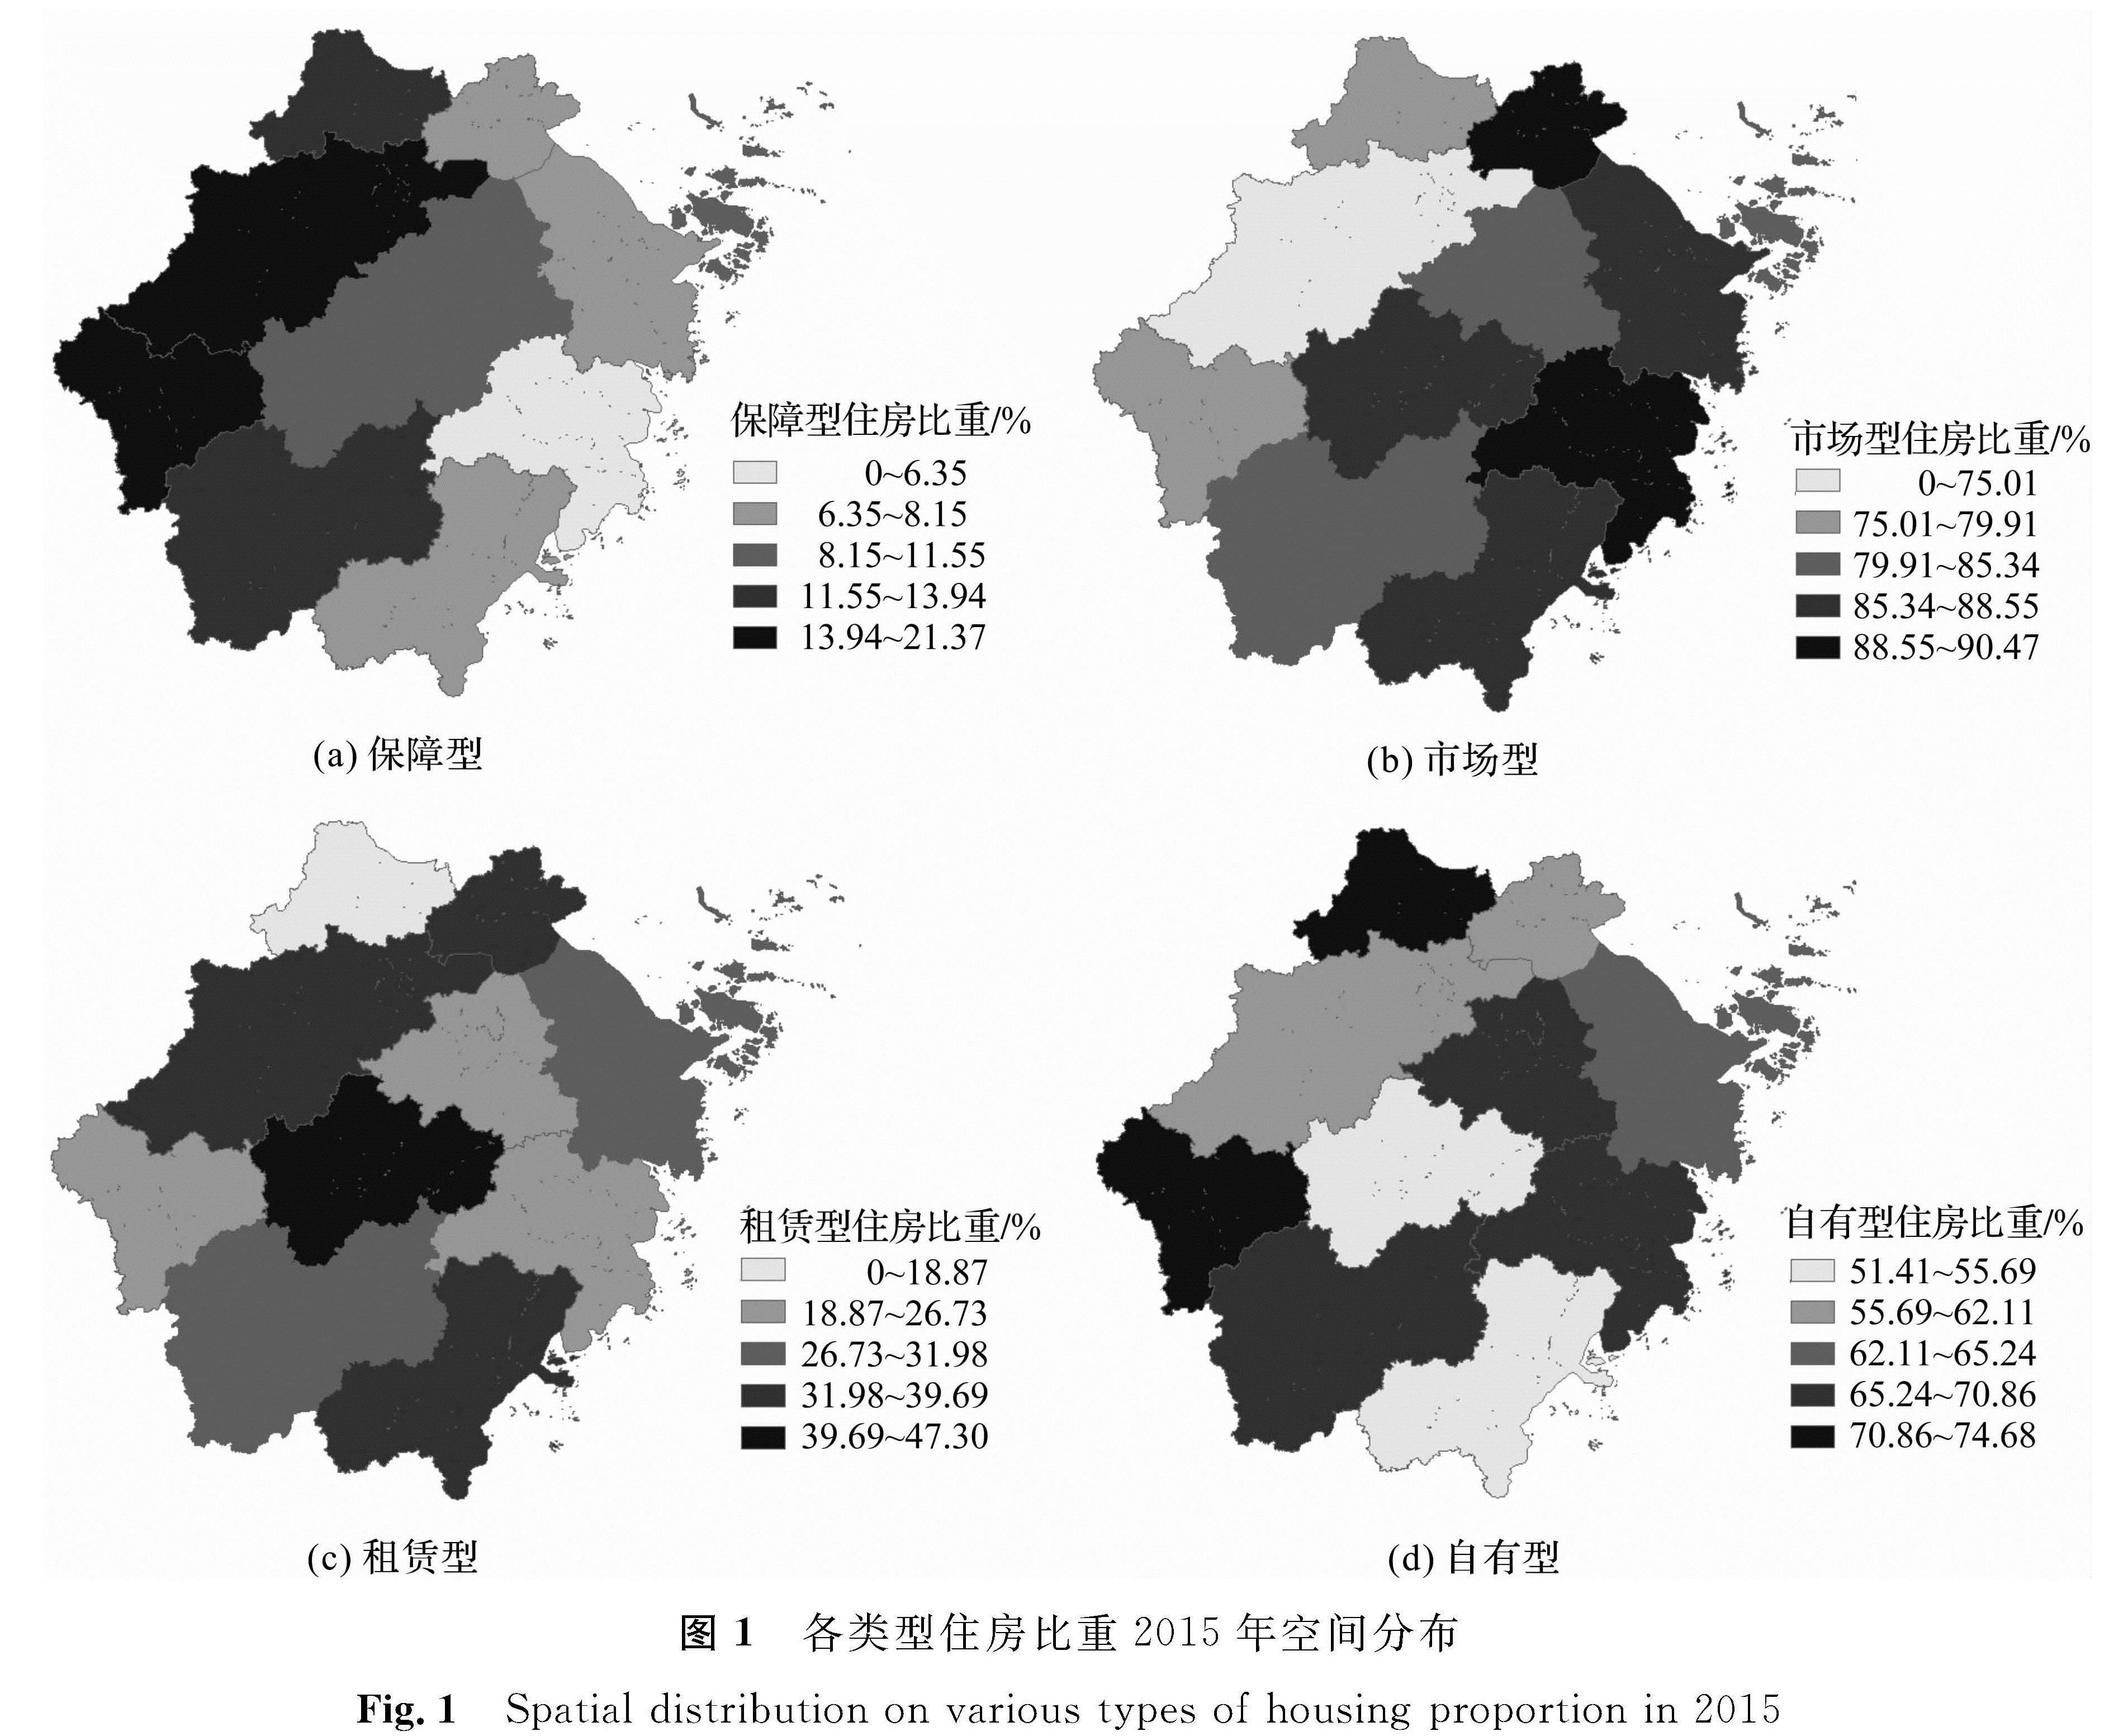 图1 各类型住房比重2015年空间分布<br/>Fig.1 Spatial distribution on various types of housing proportion in 2015